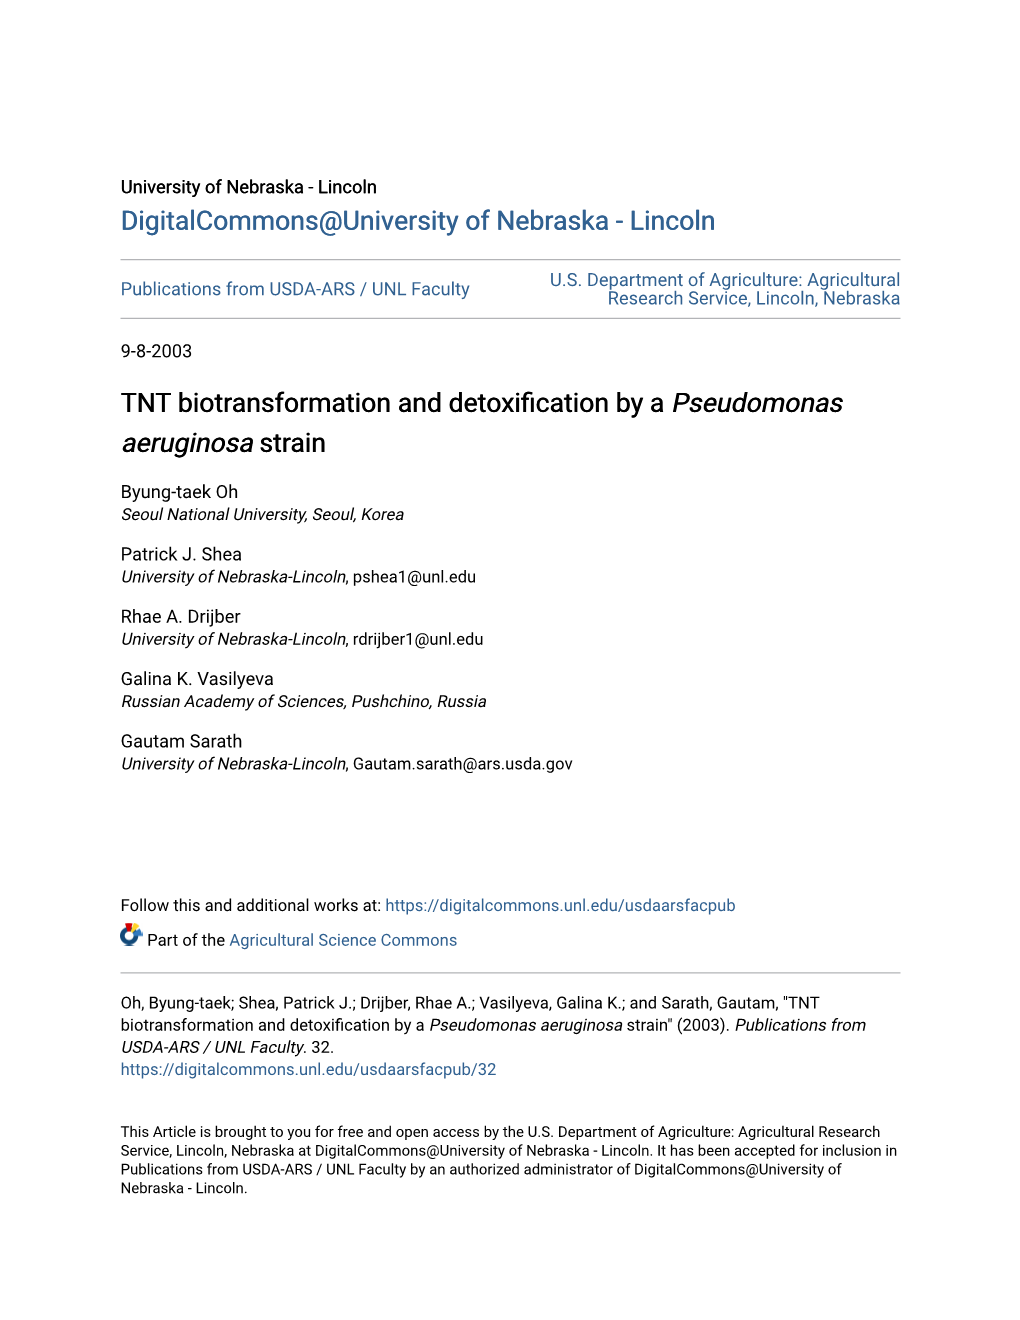 TNT Biotransformation and Detoxification by a Pseudomonas Aeruginosa Strain" (2003)